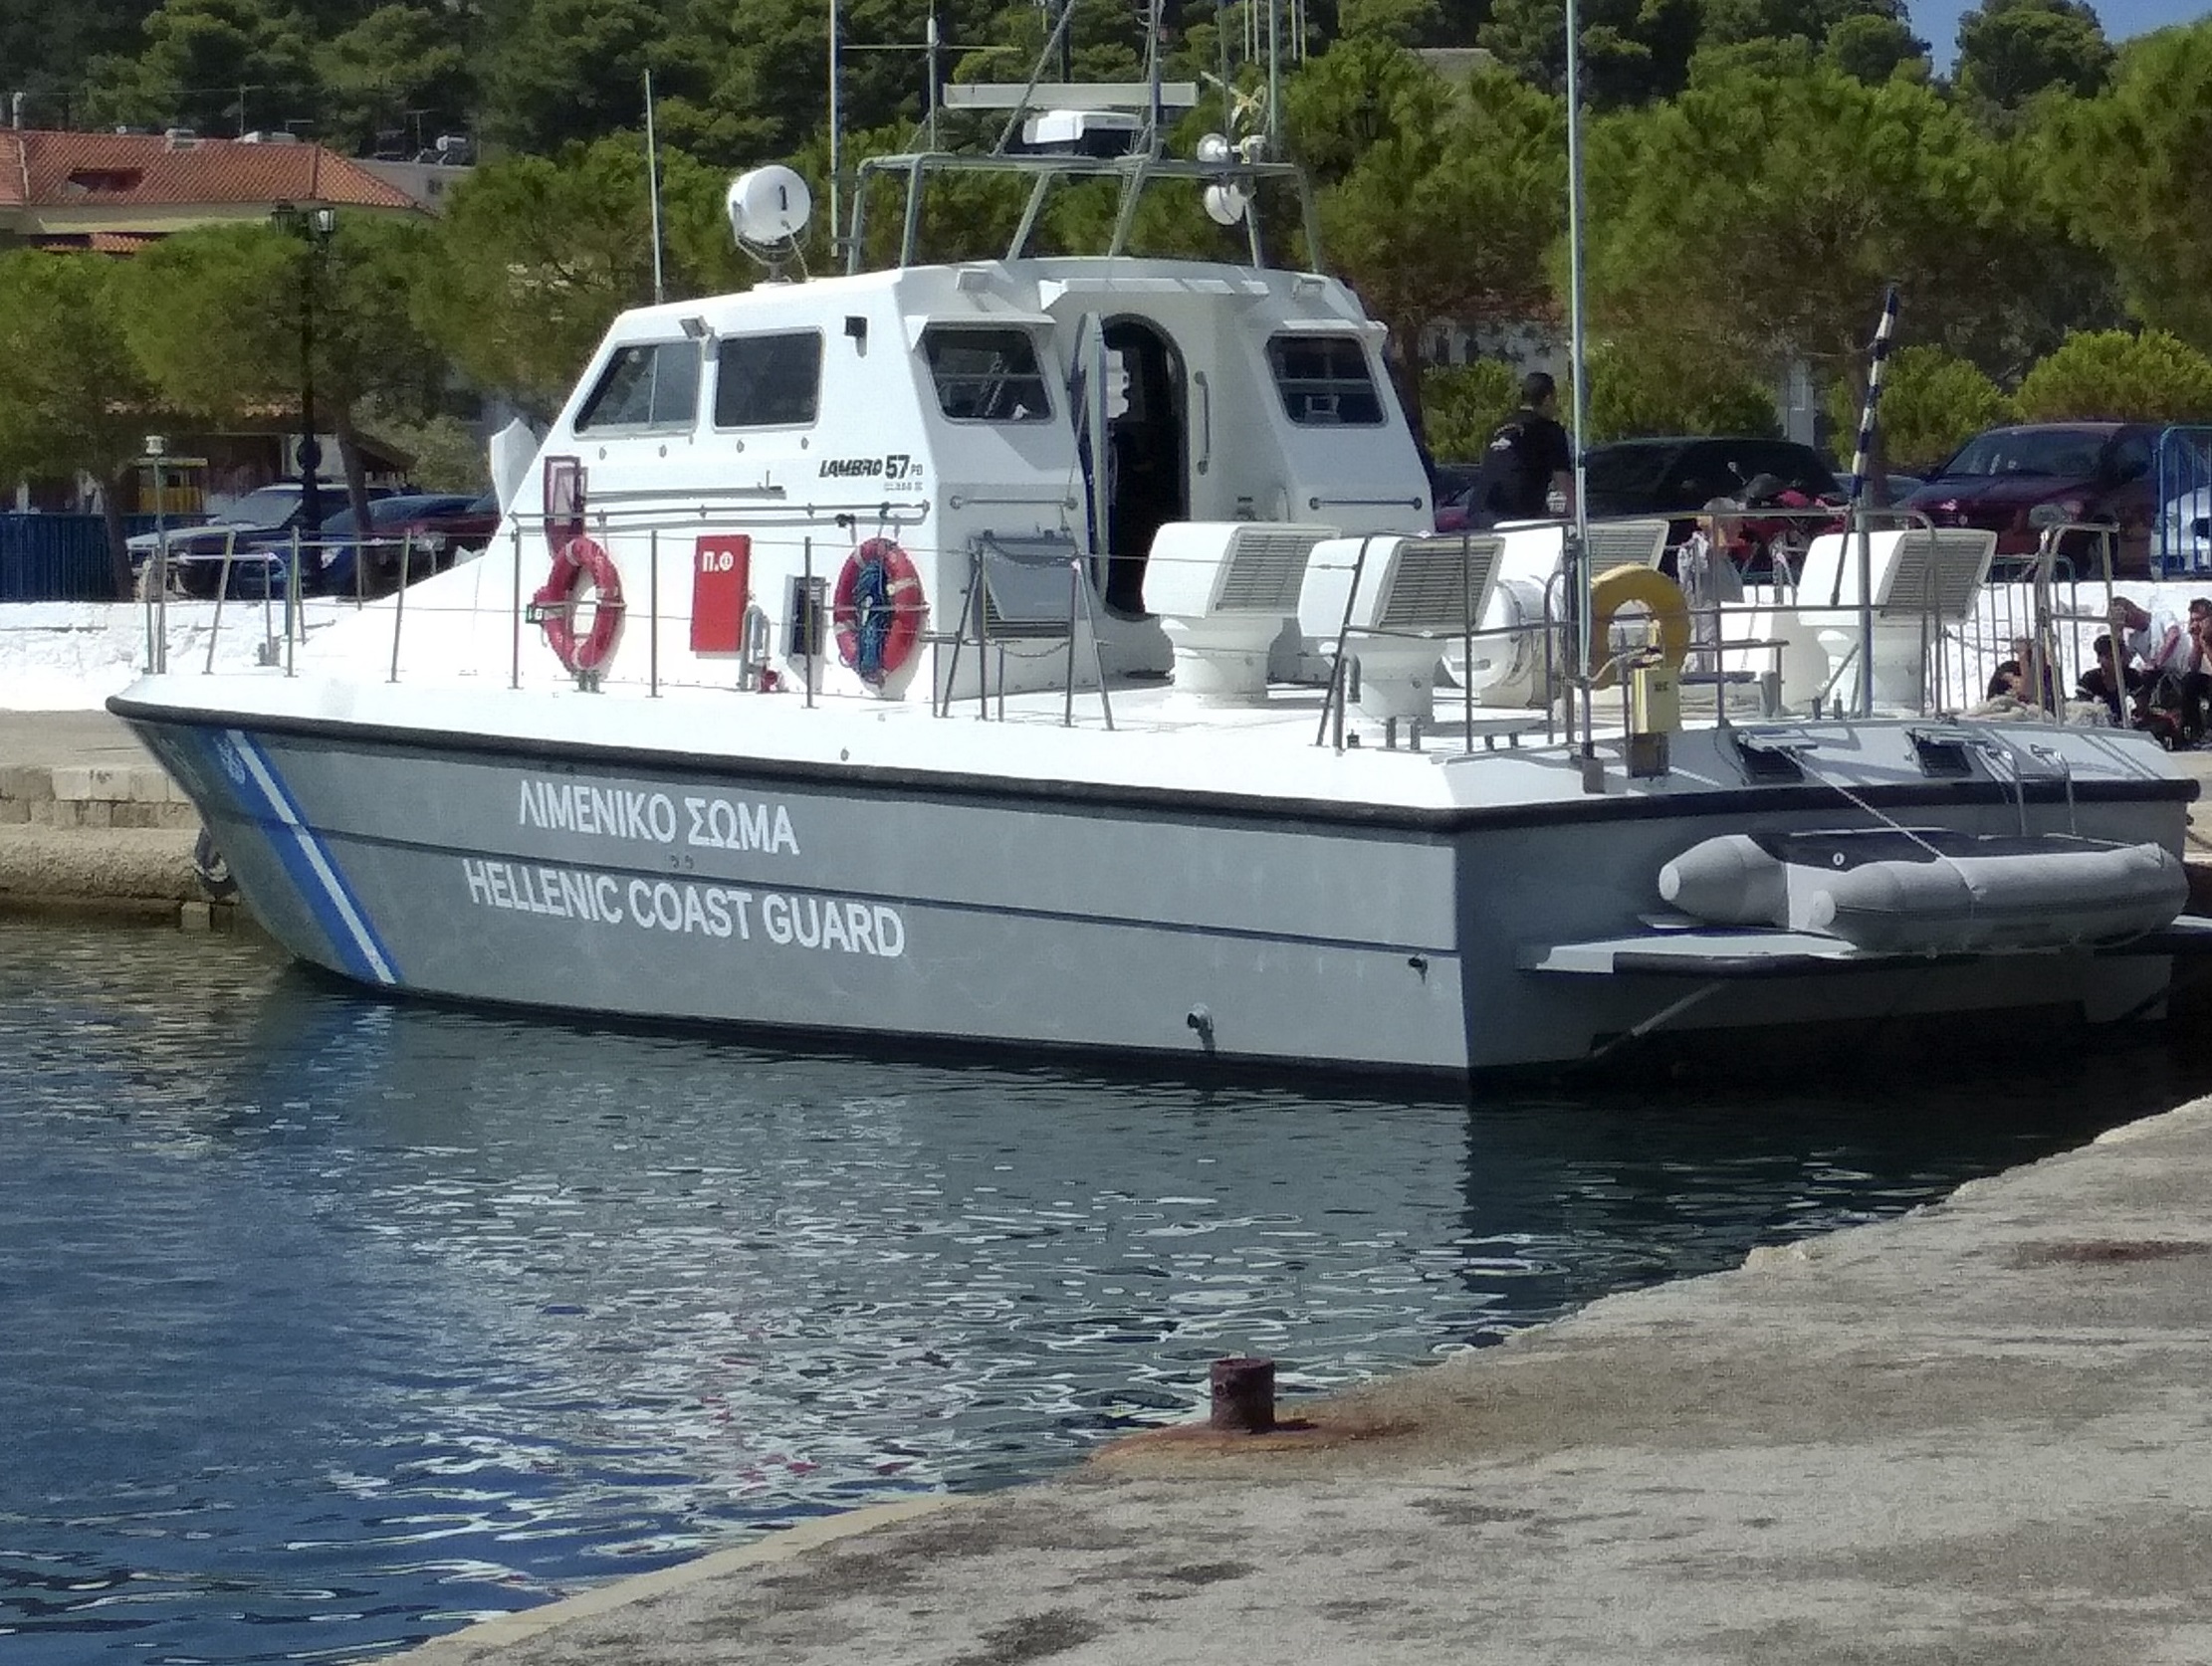 Κρήτη: Οι υποψίες επιβεβαιώθηκαν! Αυτά βρέθηκαν στο “ύποπτο πλοίο” στην Παλαιοχώρα